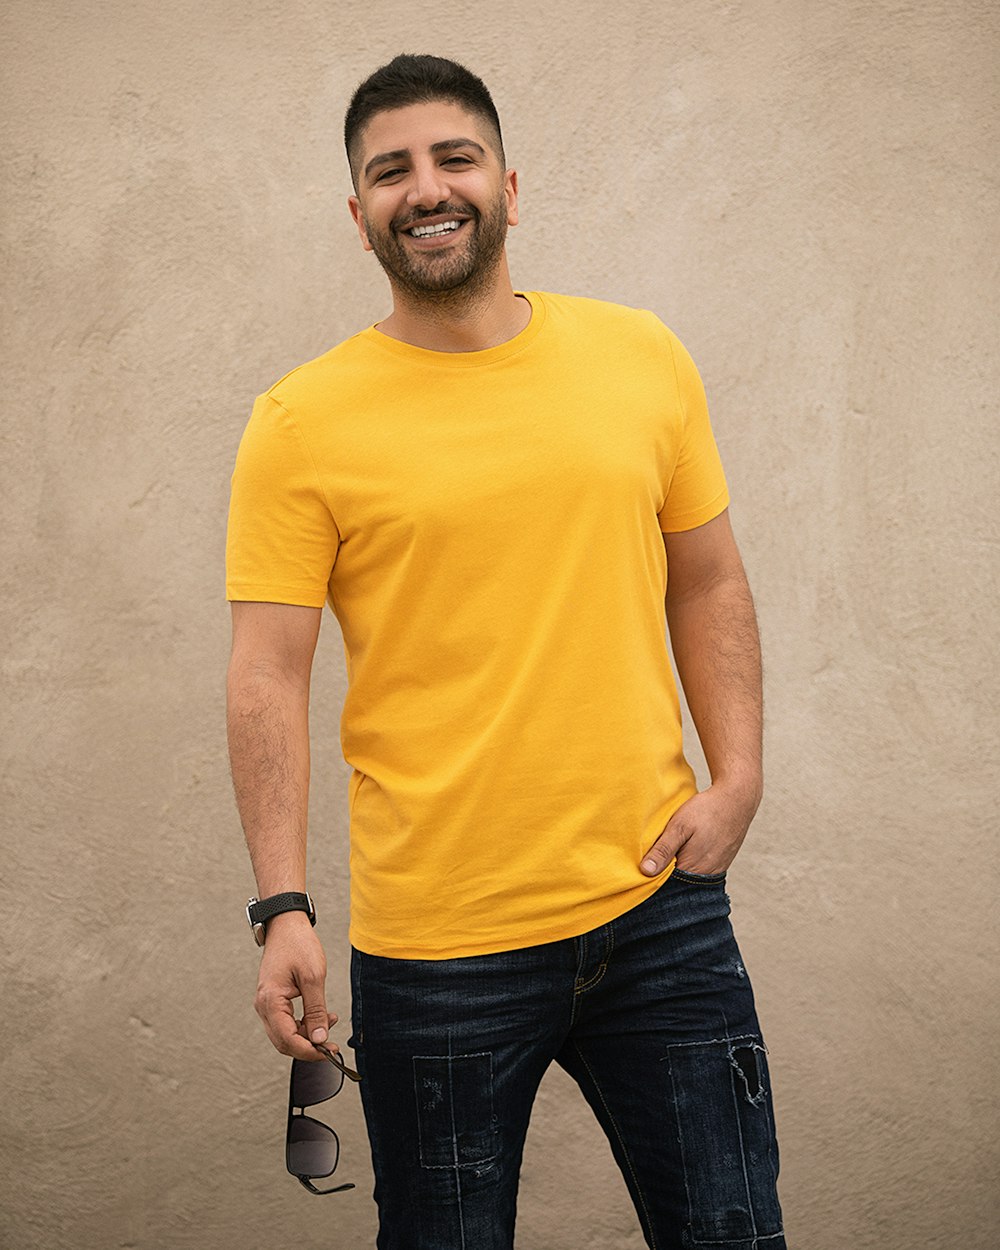 Hombre con camiseta amarilla de cuello redondo y jeans de mezclilla negros de pie junto a la pared blanca